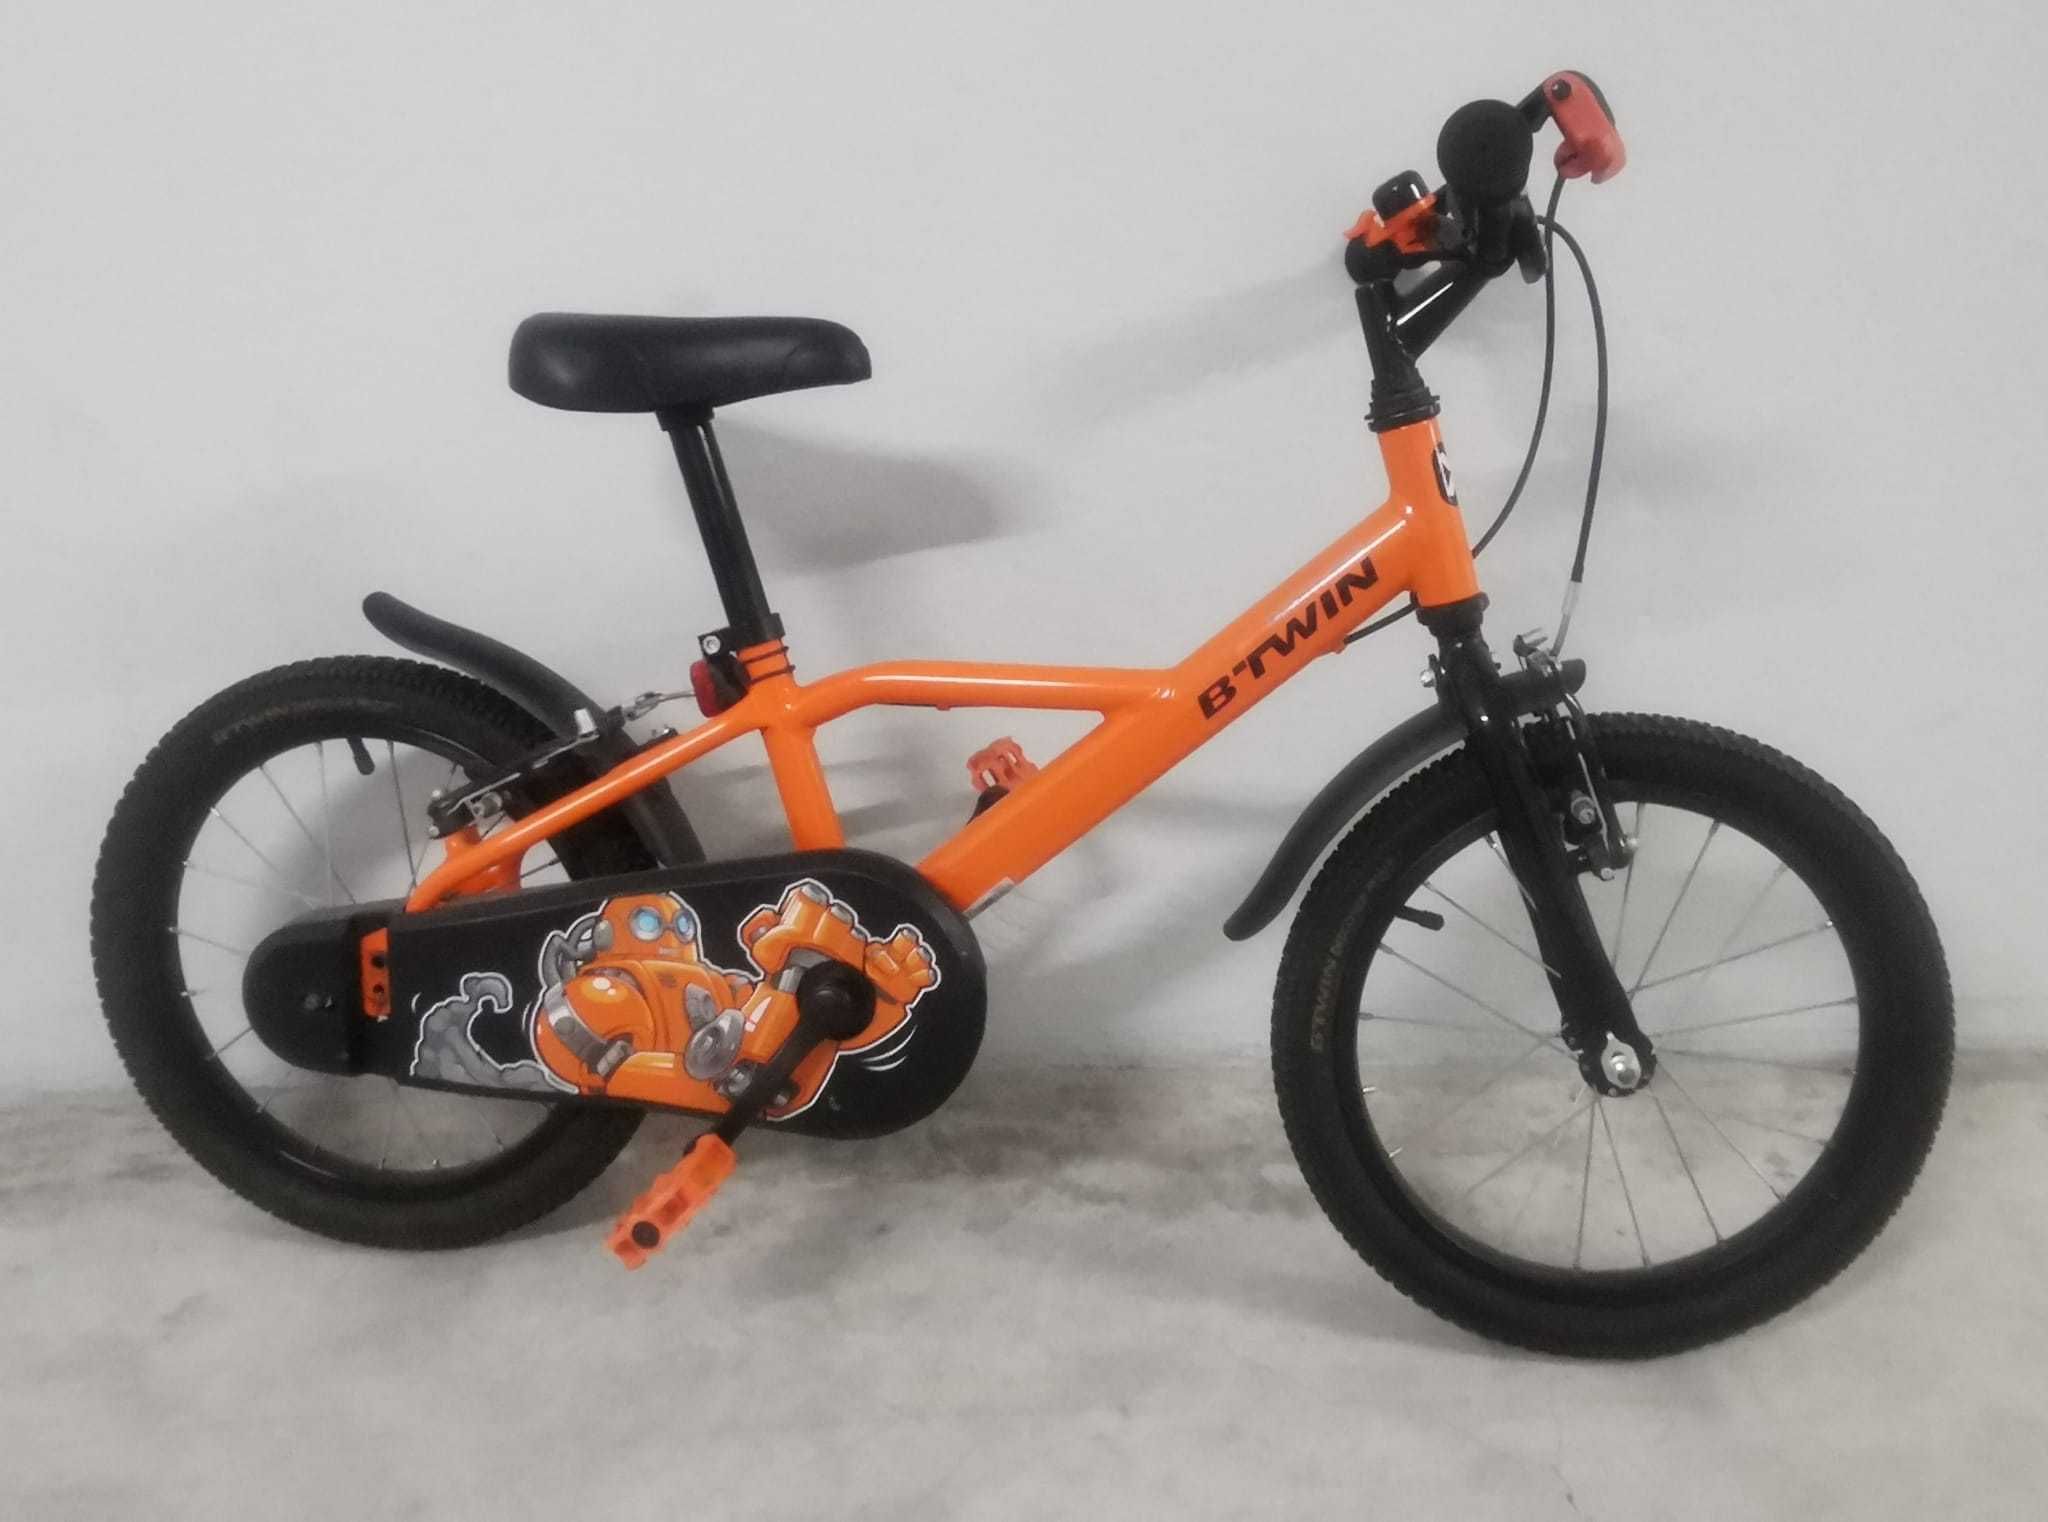 Bicicleta Criança - 4/6 Anos - Preta e Laranja + Rodinhas de Apoio